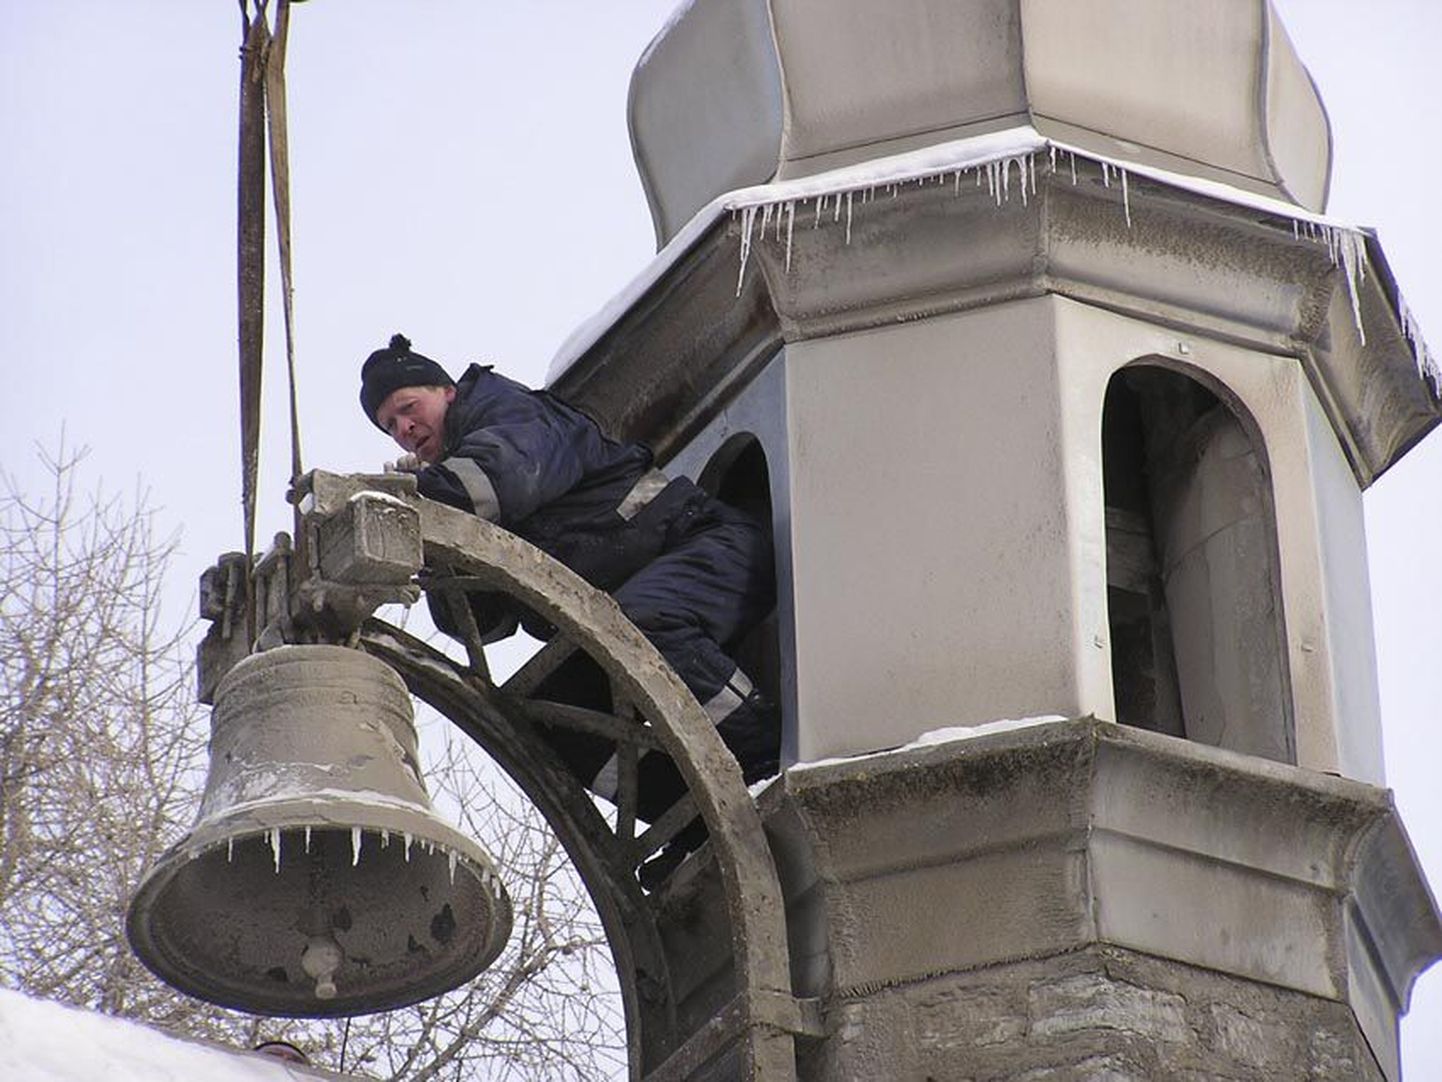 Et raske kell korralikult tornist alla saaks, saadeti seda kinnitama rammumehena kuulsust kogunud Villu Naaber.